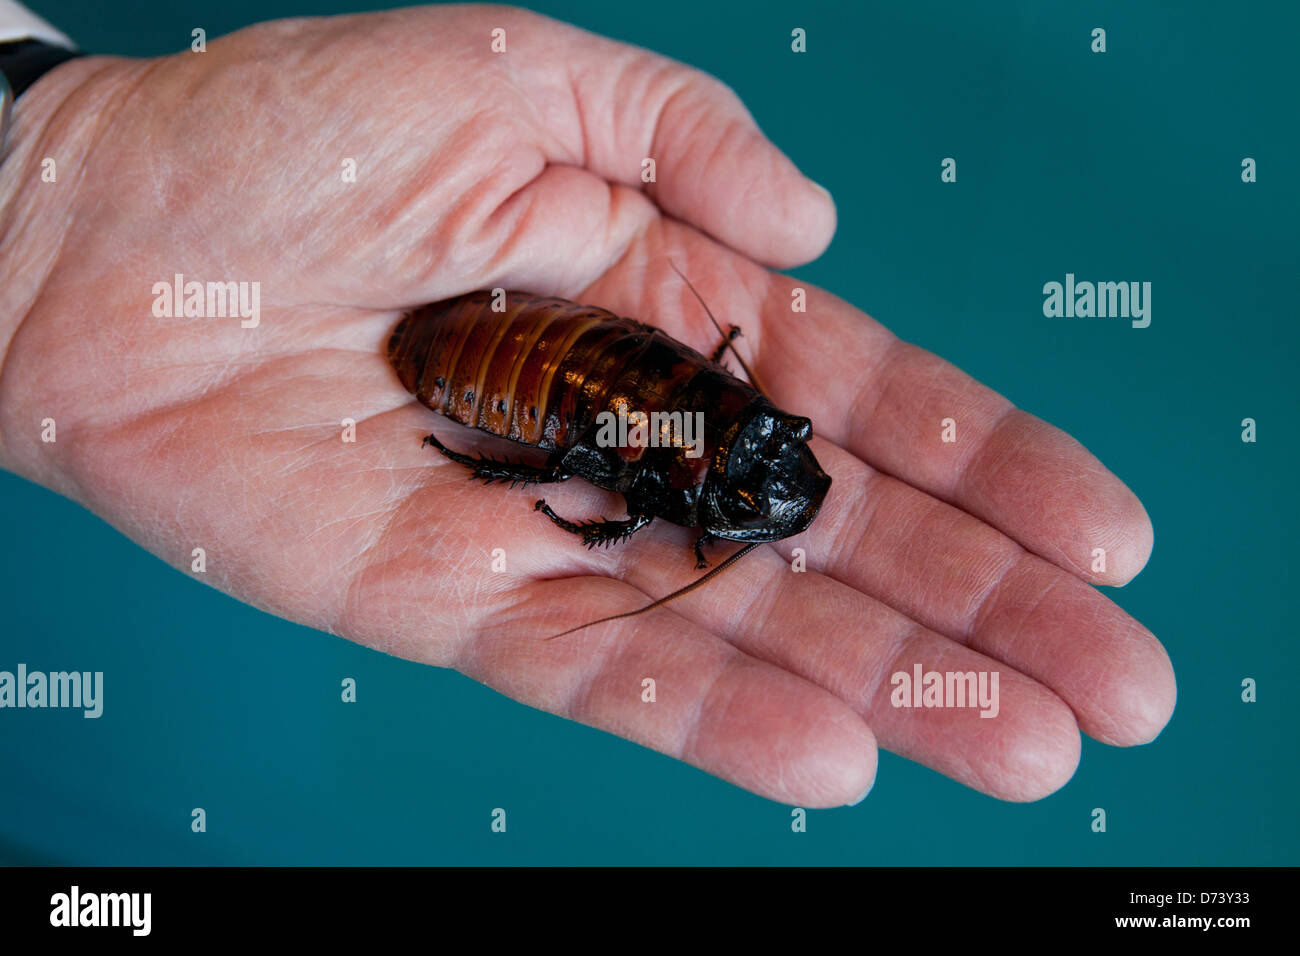 Madagascar scarafaggio sibilante (Gromphadorhina portentosa) a portata di mano Foto Stock